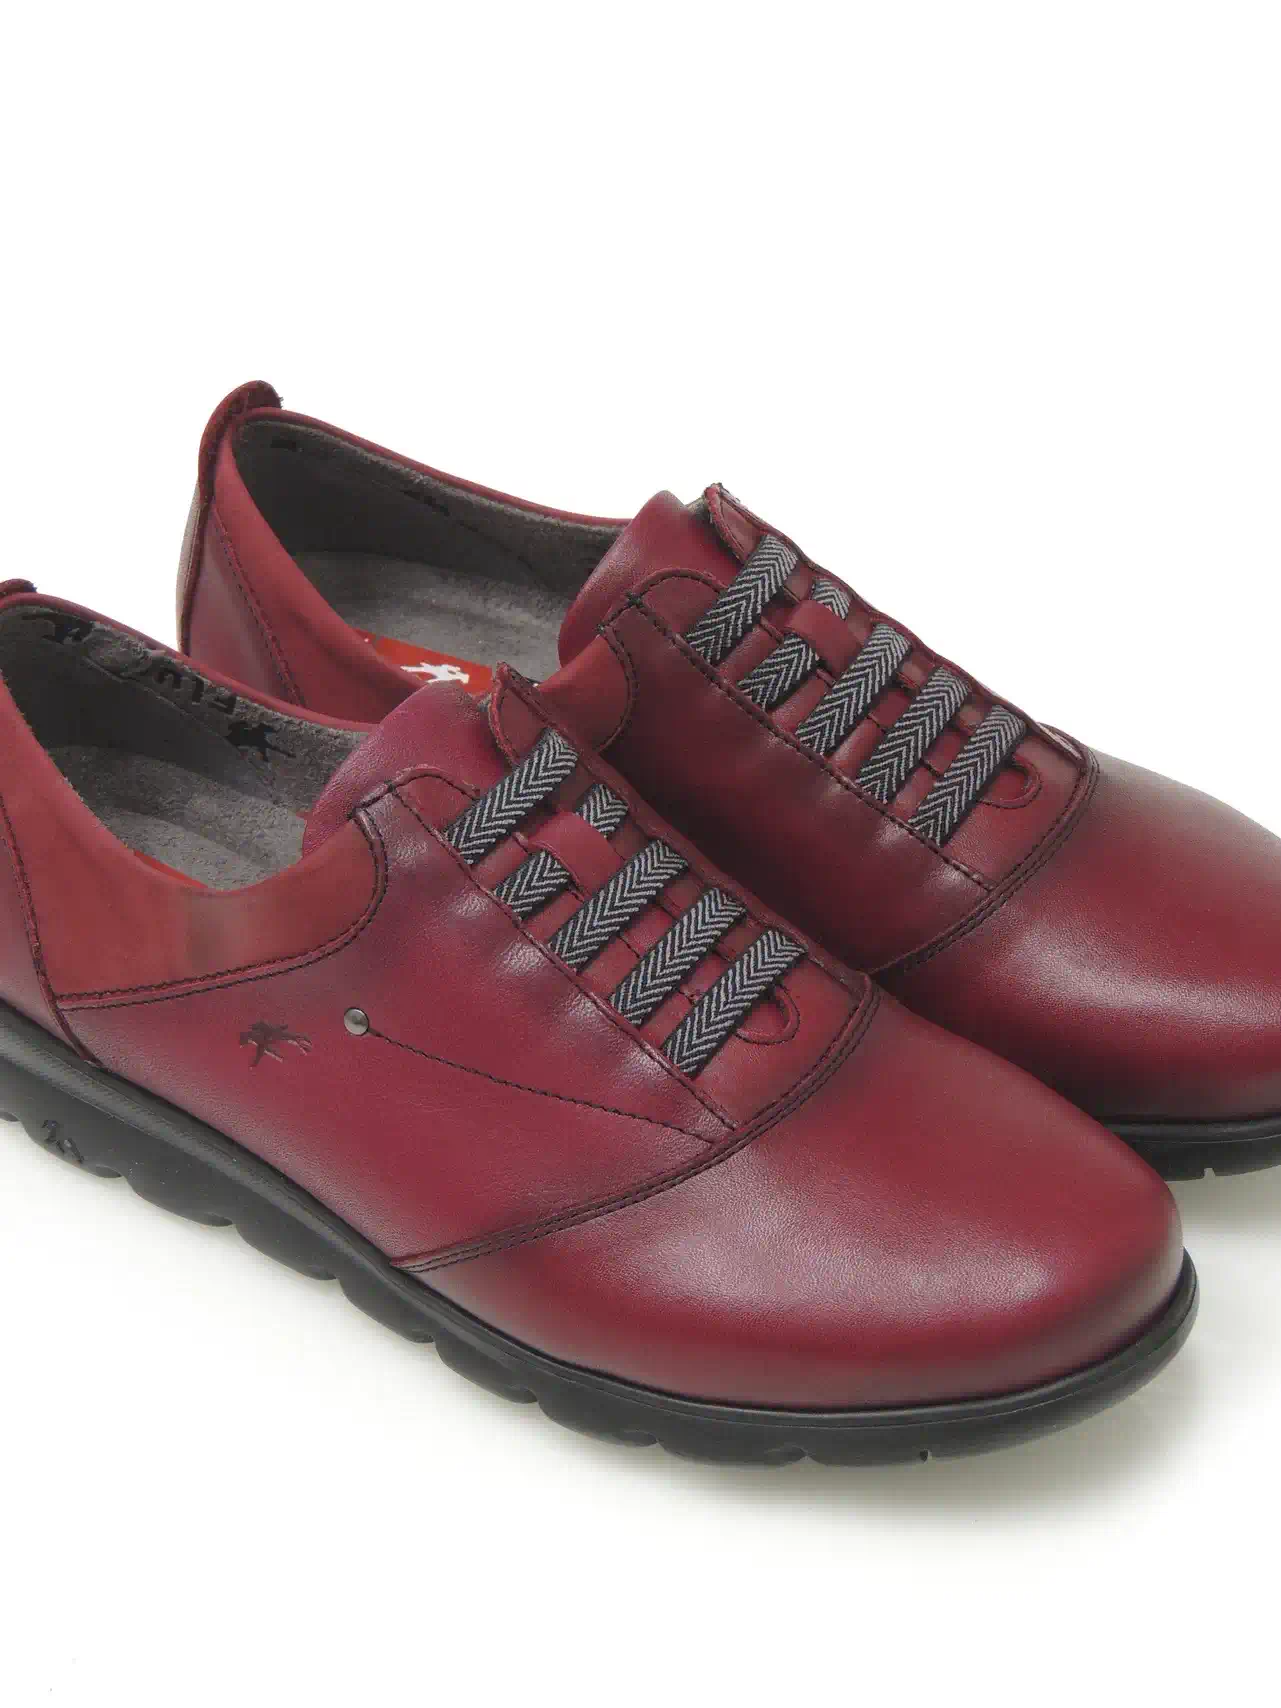 zapatos--fluchos-f0354-piel-rojo